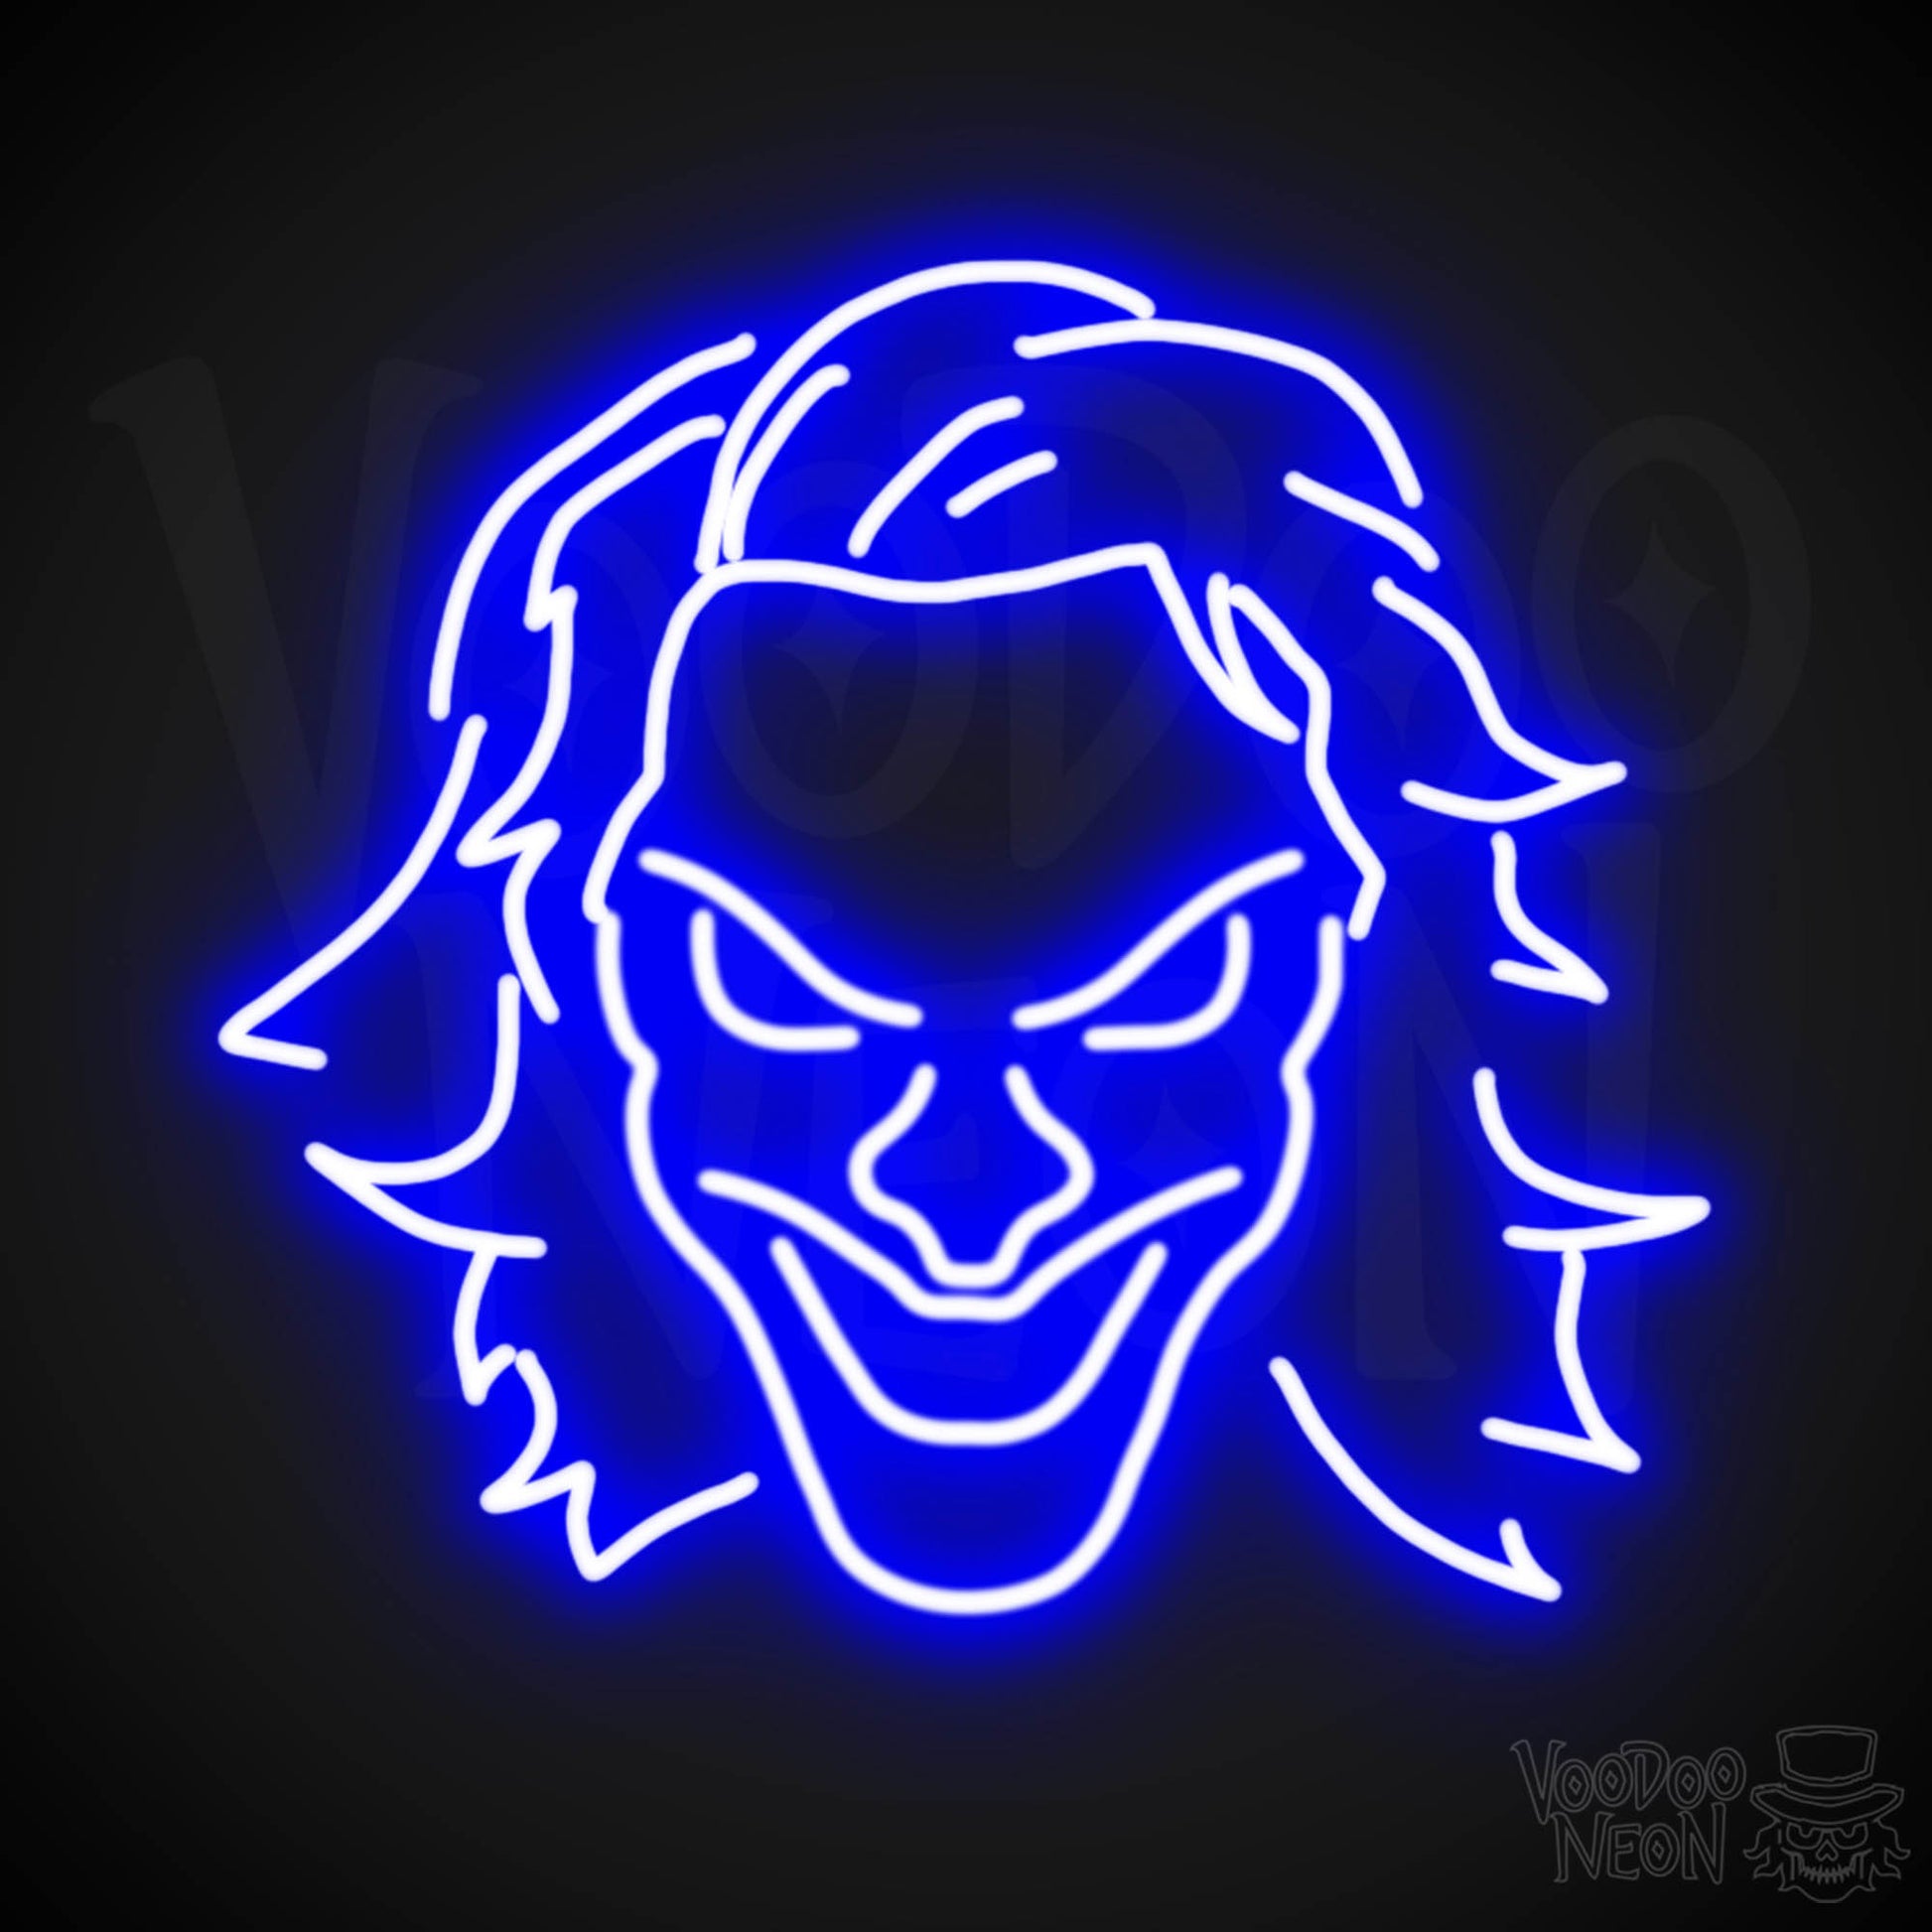 Joker Neon Sign - Neon Joker Sign - Joker LED Wall Art - Color Dark Blue